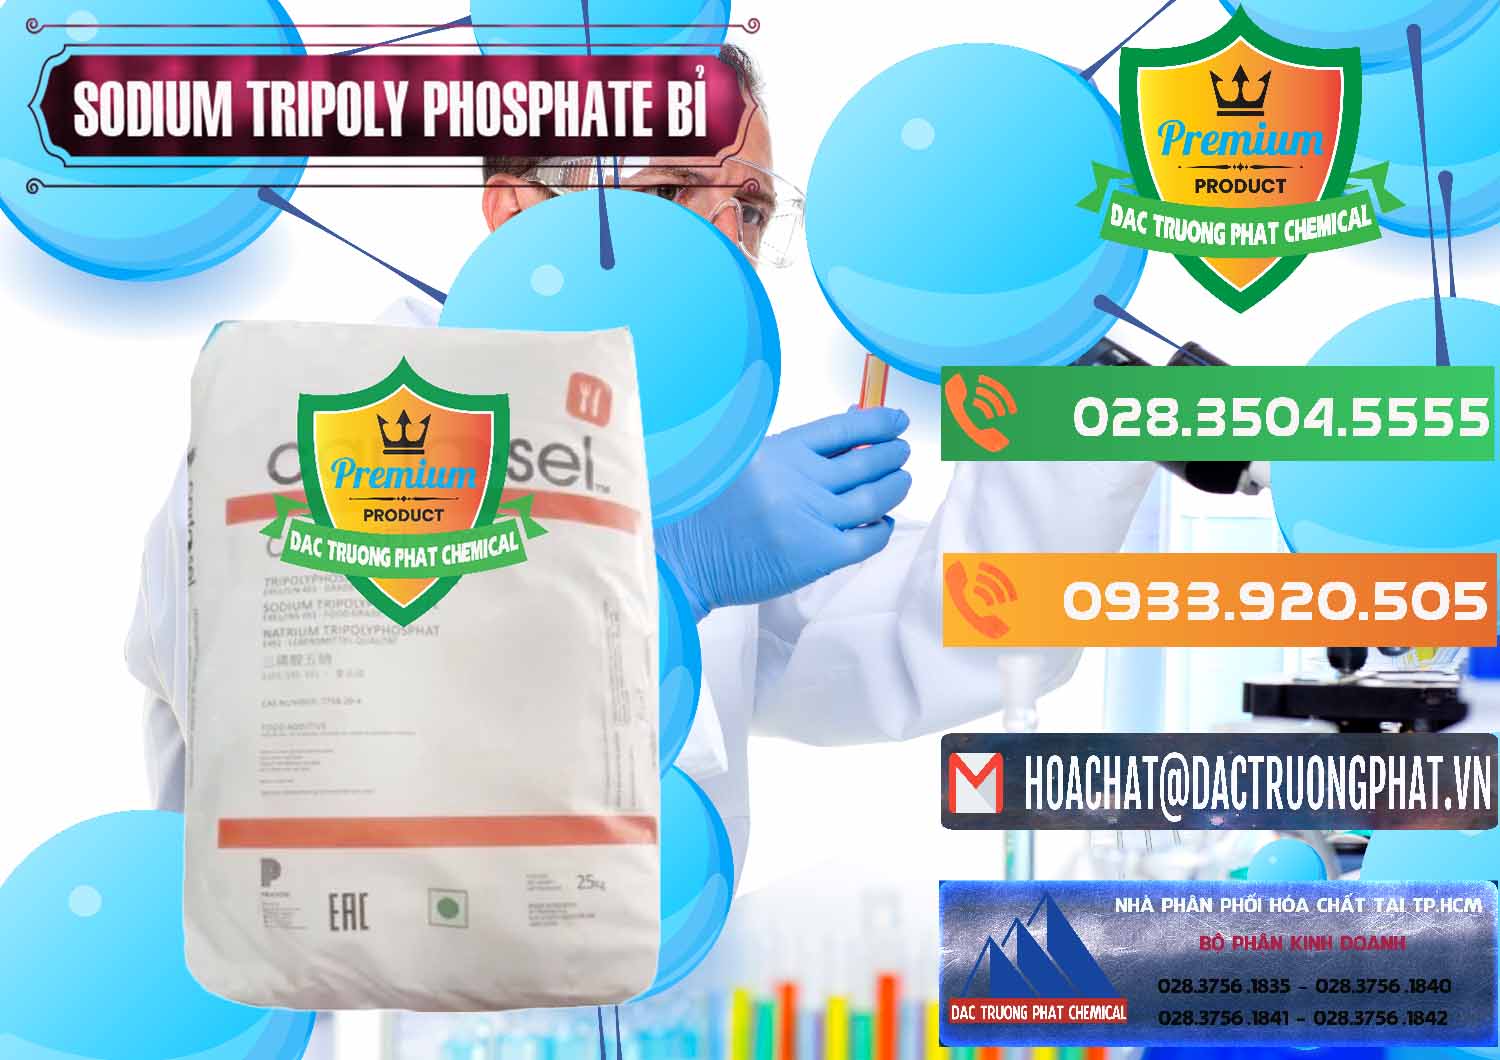 Cty bán & cung ứng Sodium Tripoly Phosphate - STPP Carfosel 991 Bỉ Belgium - 0429 - Chuyên phân phối và cung cấp hóa chất tại TP.HCM - hoachatxulynuoc.com.vn